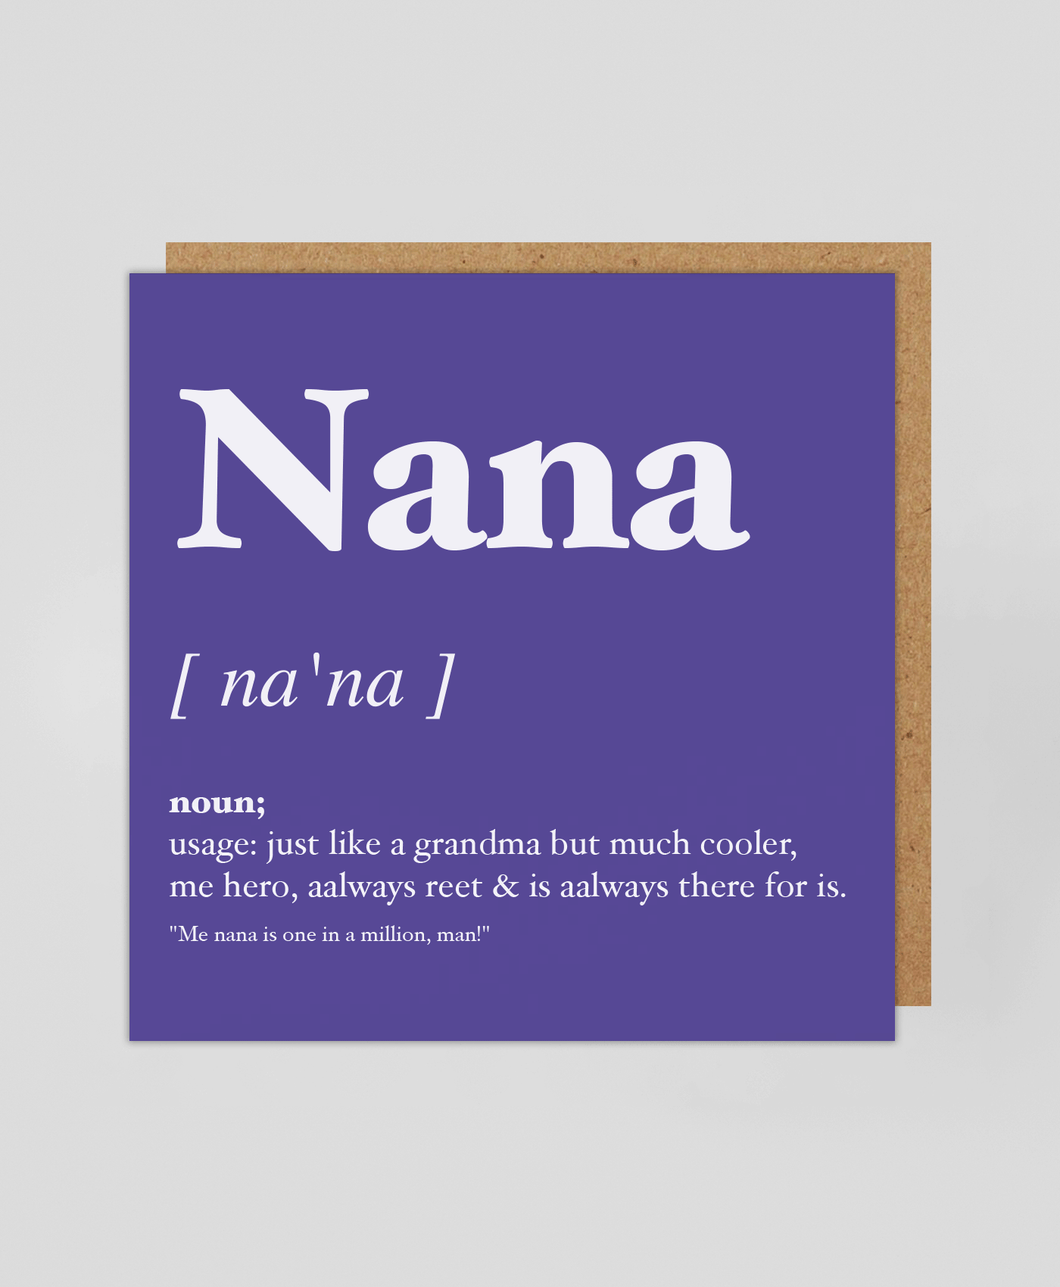 Nana Geordie Dialect - Greetings Card